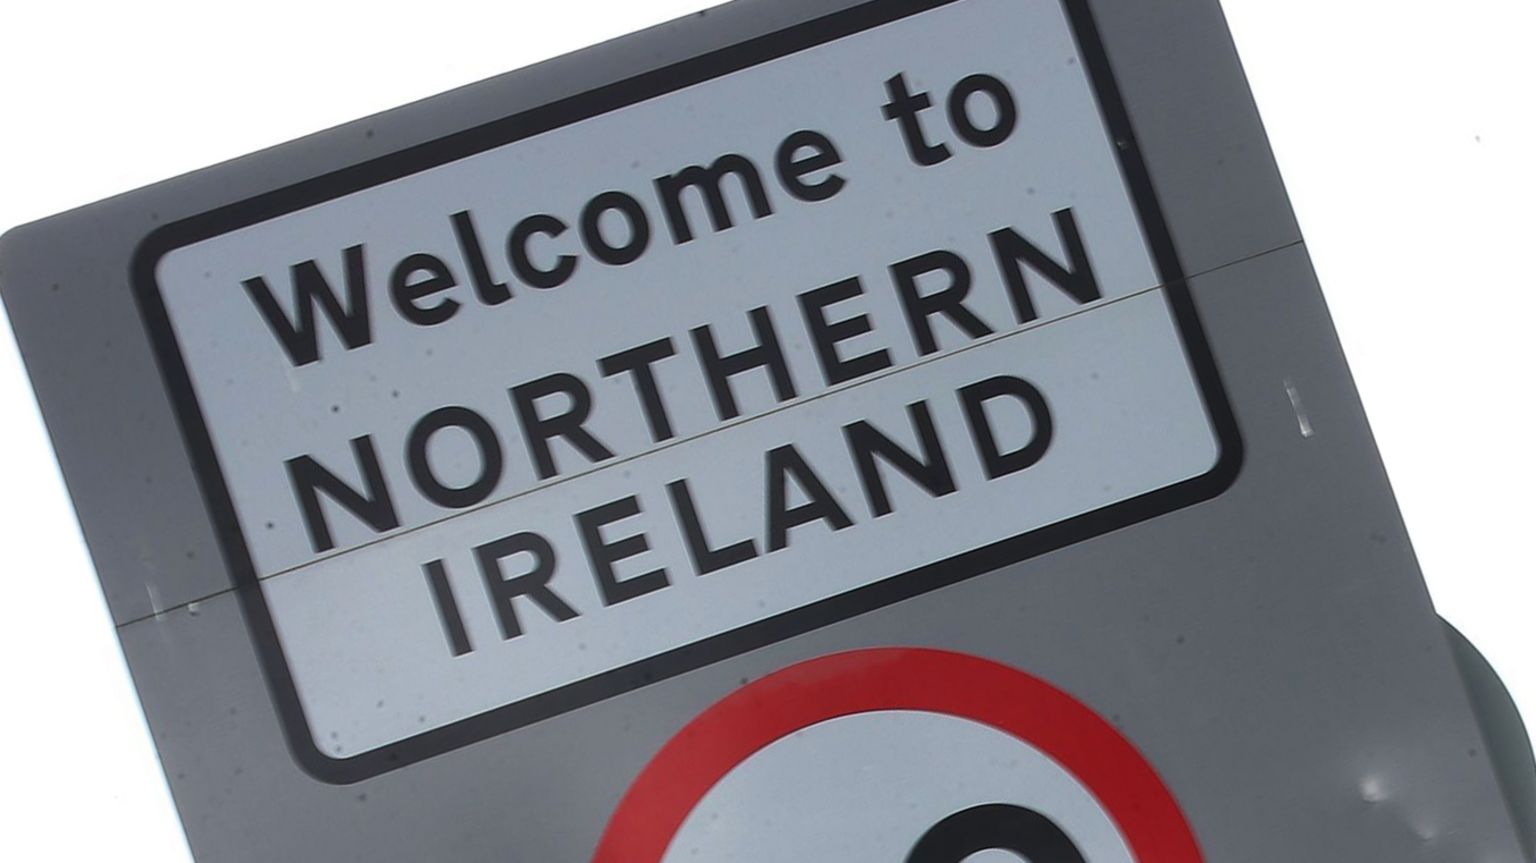 Sign at the Irish border.